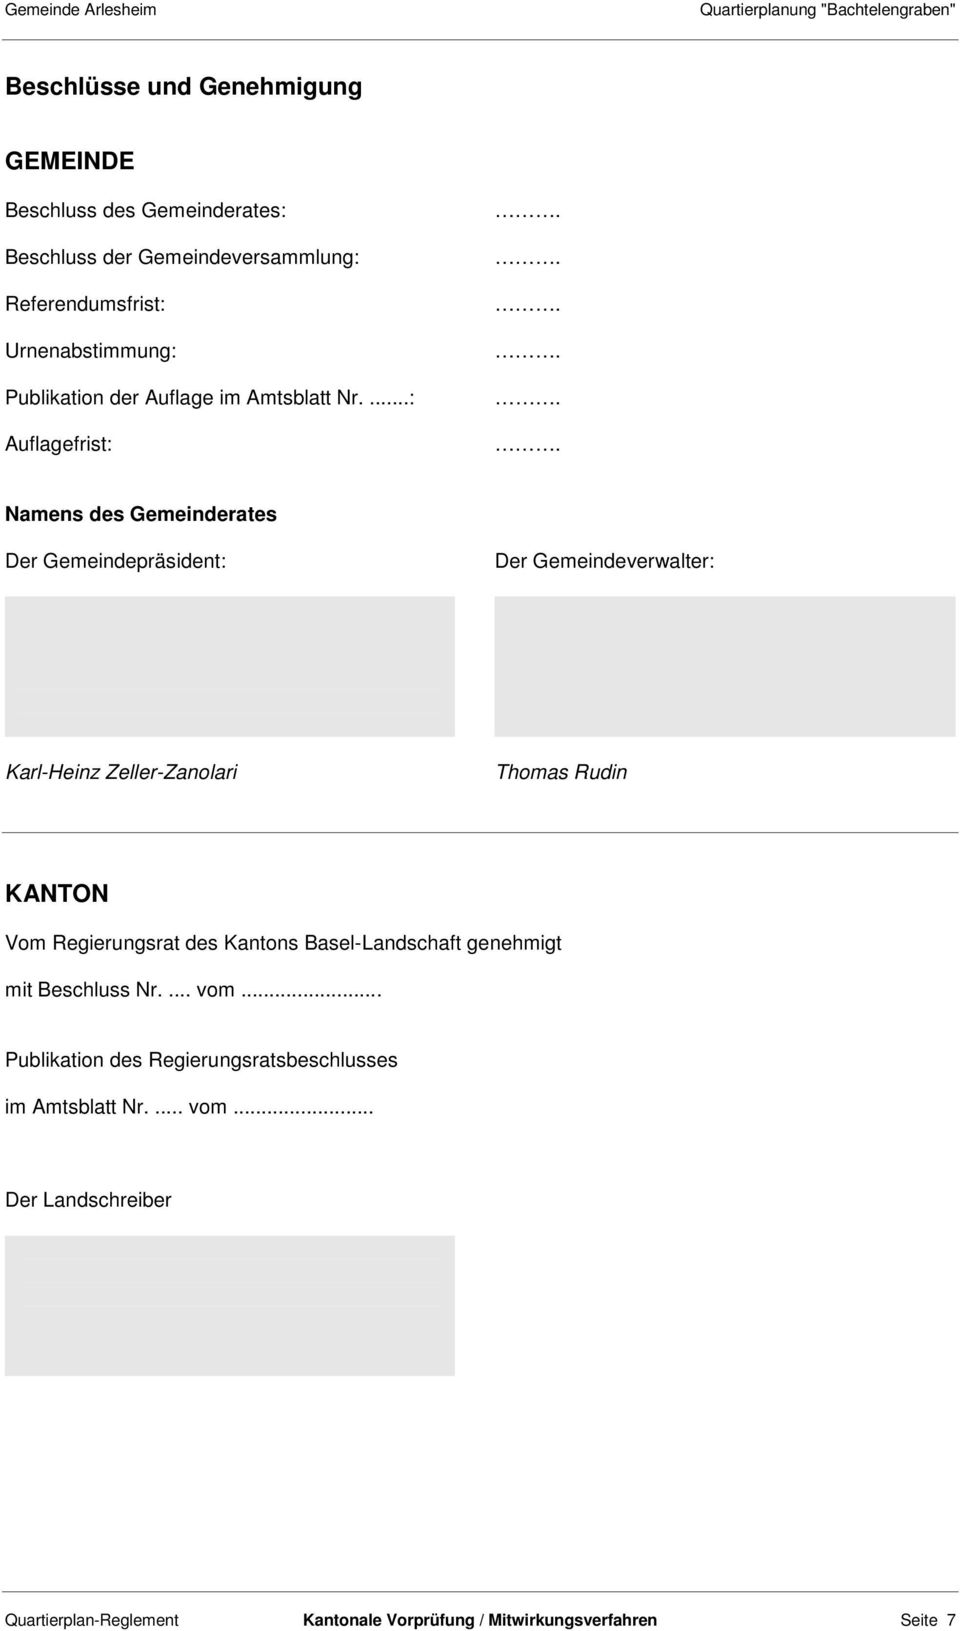 ...: Auflagefrist: Namens des Gemeinderates Der Gemeindepräsident: Der Gemeindeverwalter: Karl-Heinz Zeller-Zanolari Thomas Rudin KANTON